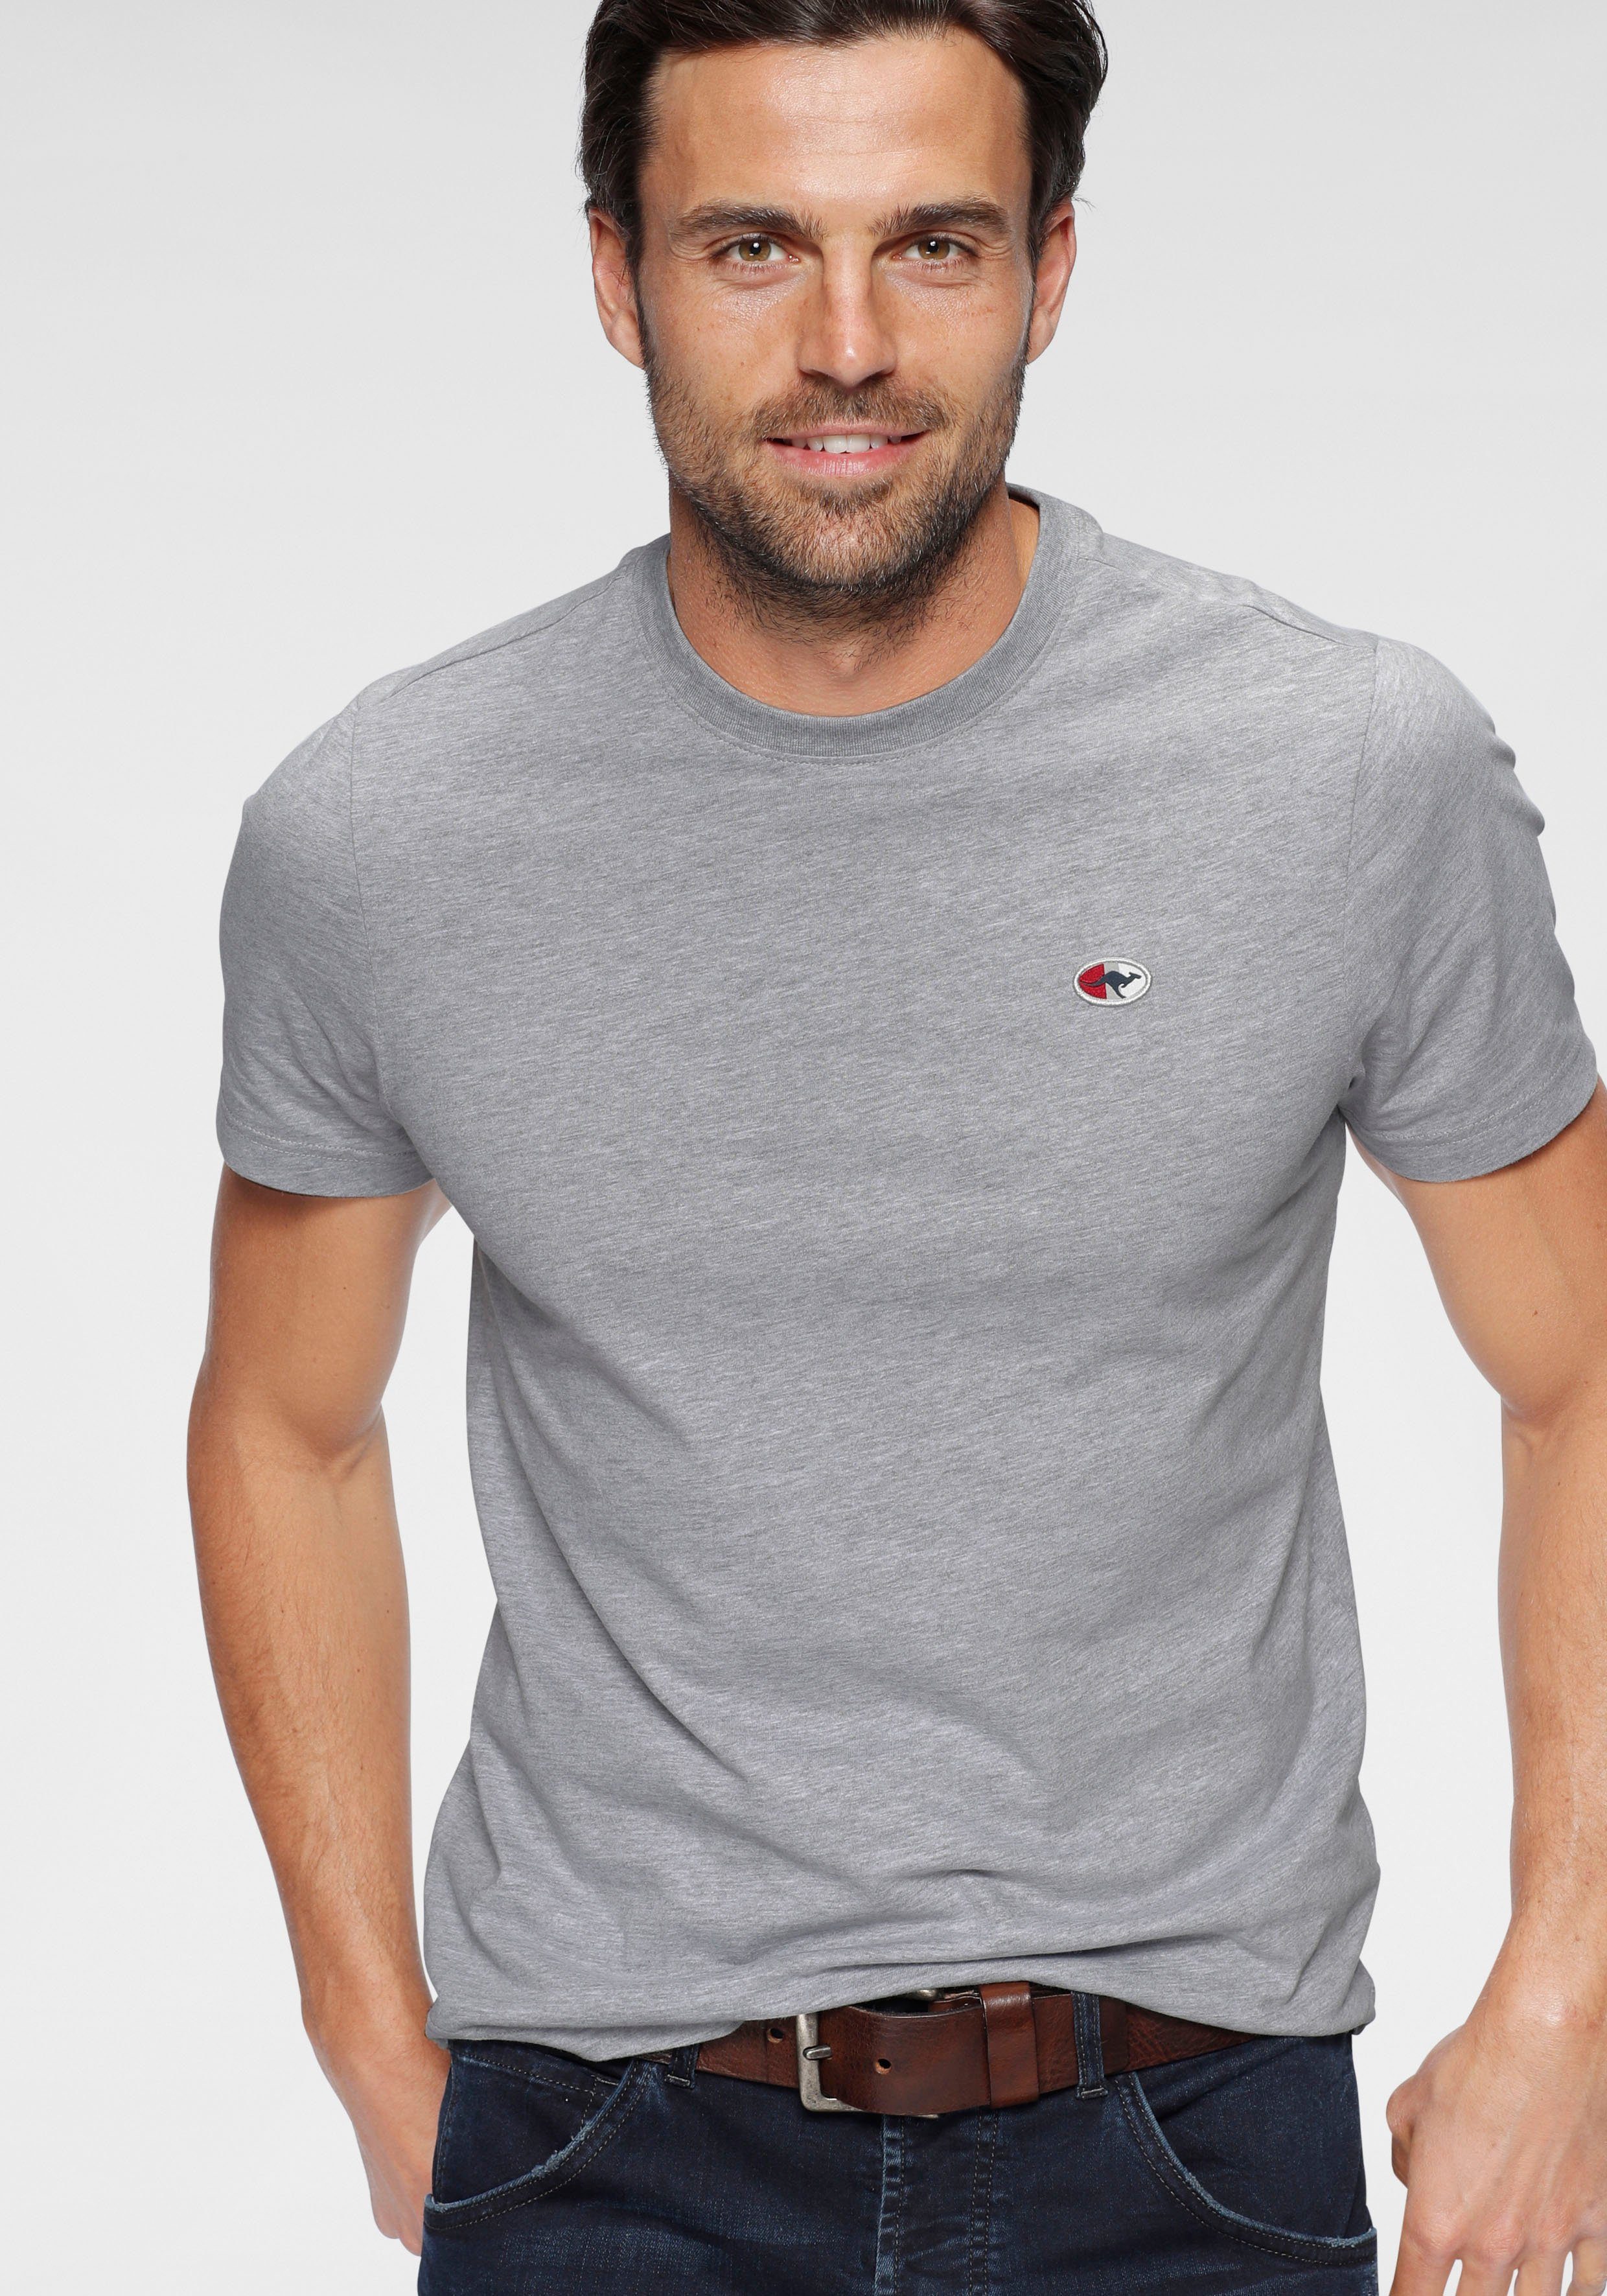 KangaROOS T-Shirt unifarben grau-meliert | T-Shirts